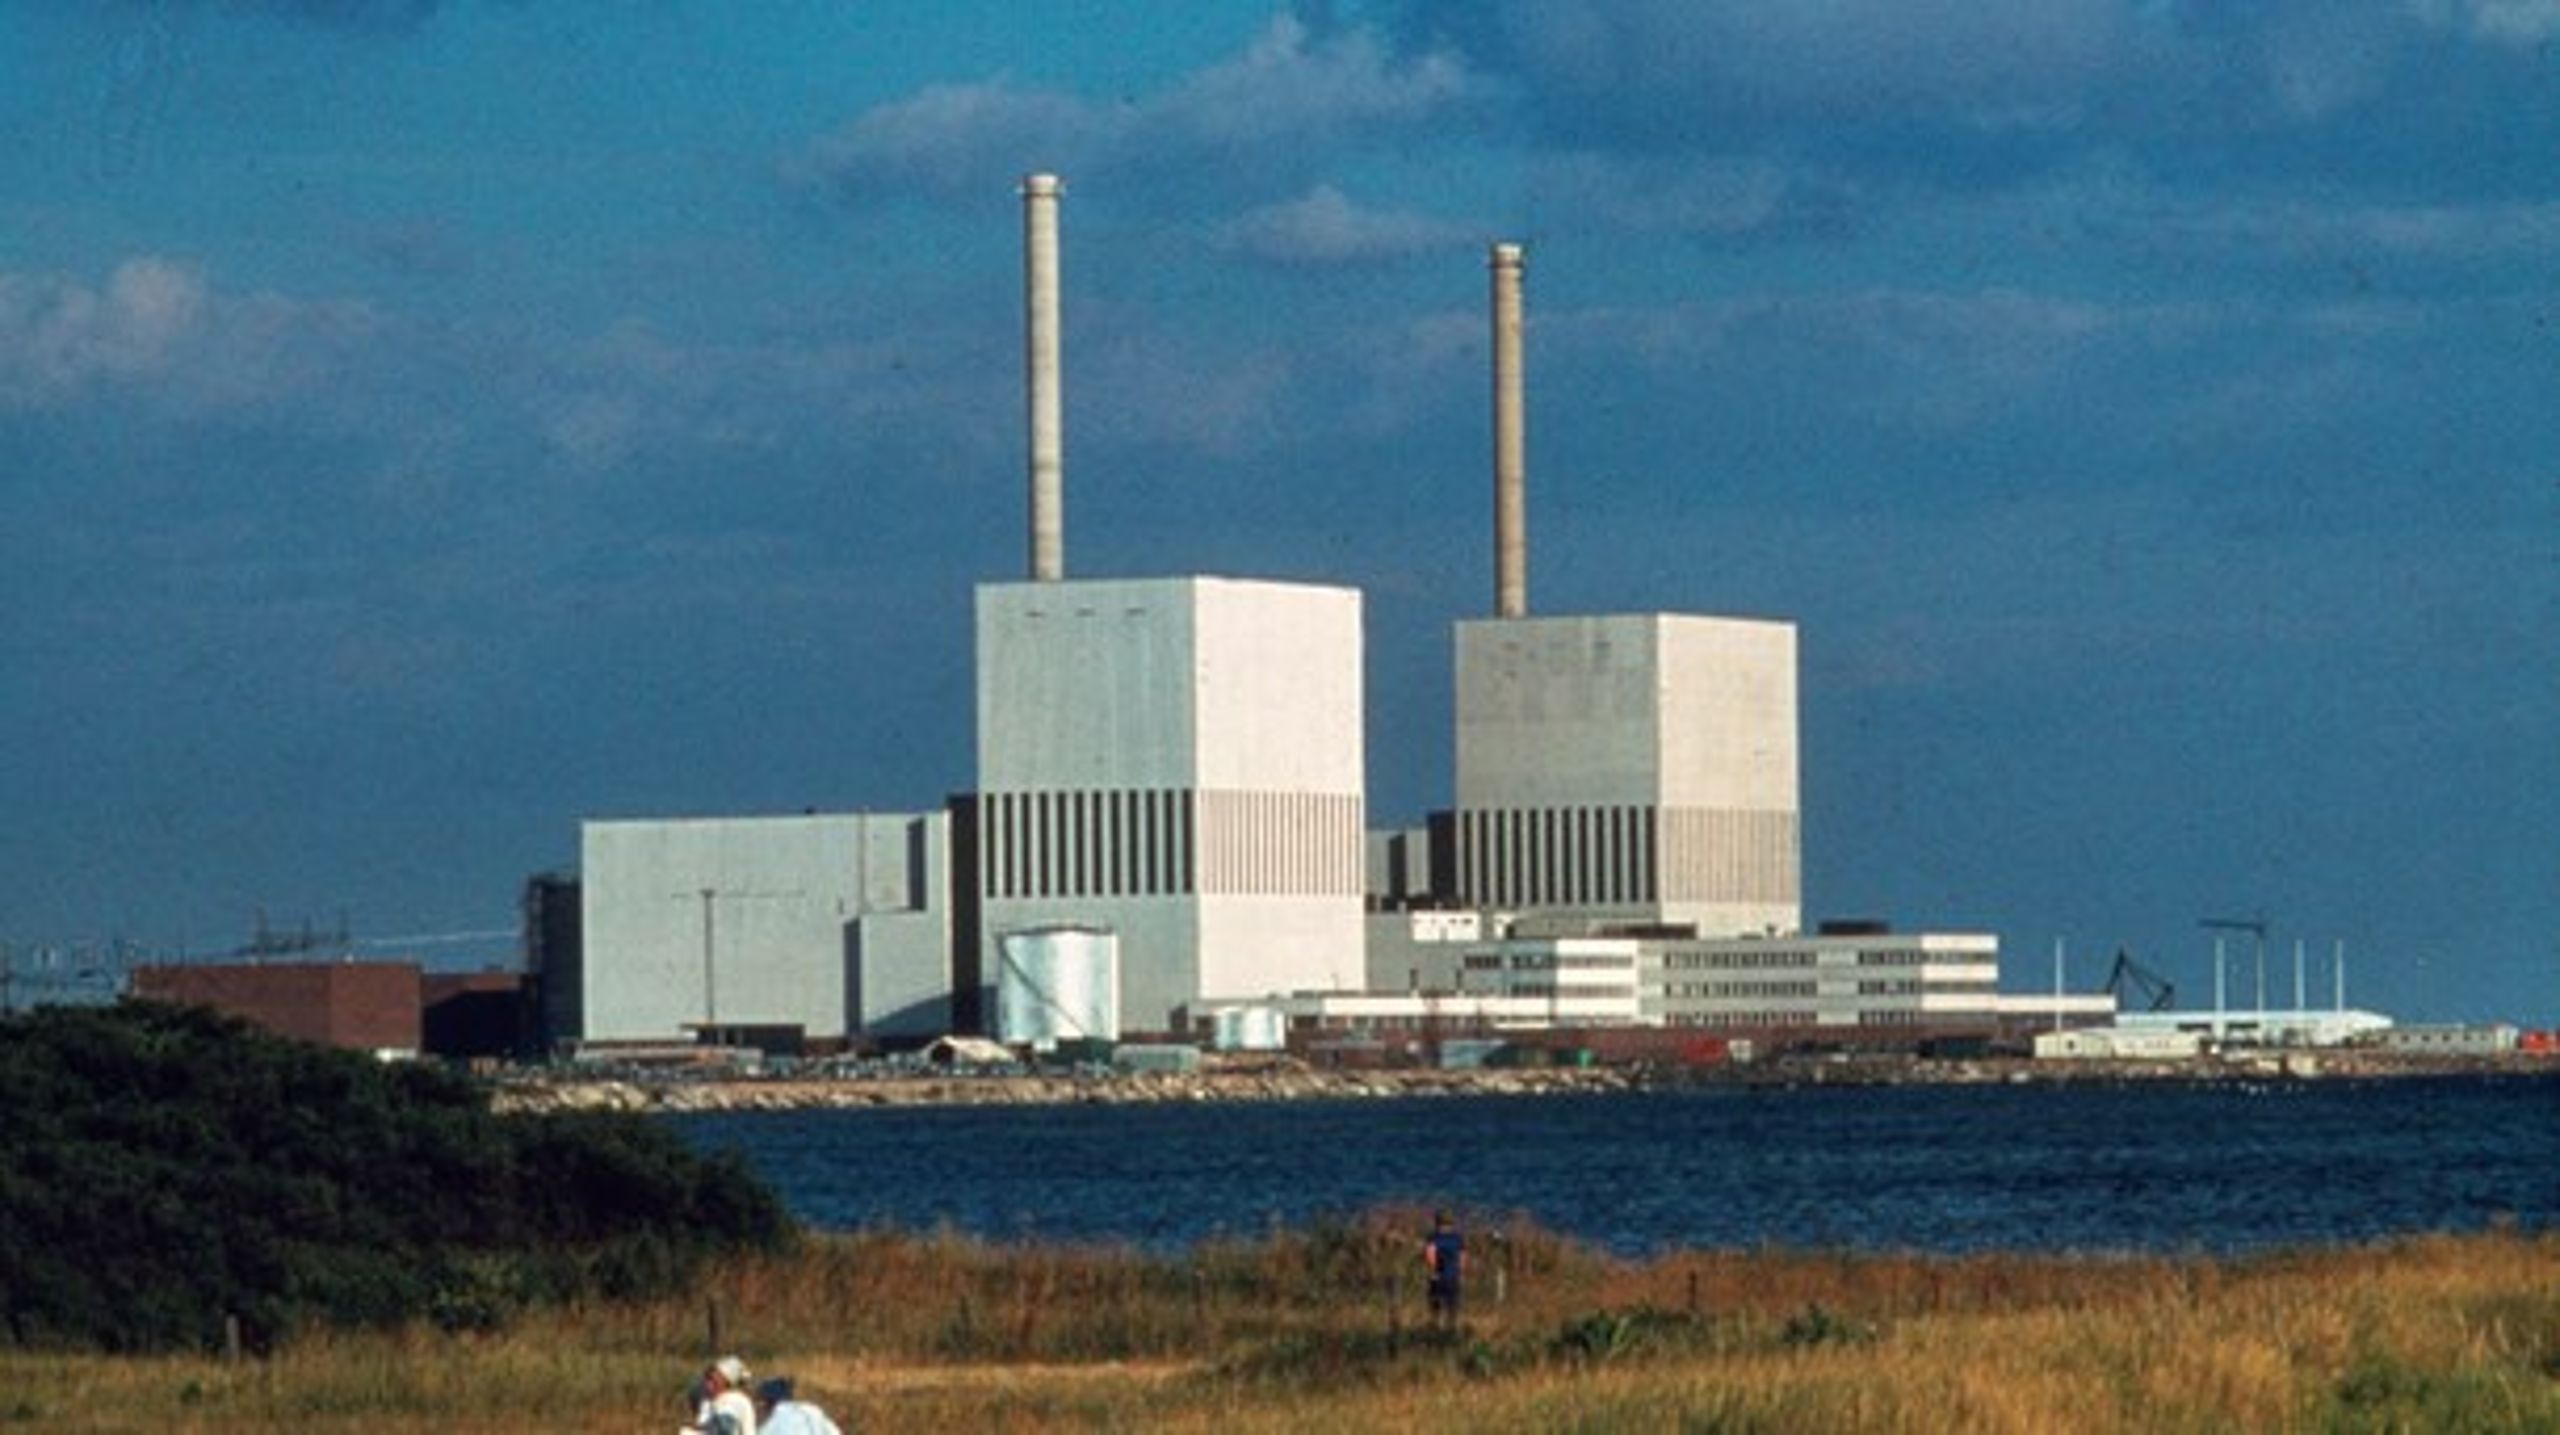 Det ser nu ud til, at Danmark skærer i støtten til Euratom, hvilket må siges at være fornuftigt, skriver Oluf Danielsen.